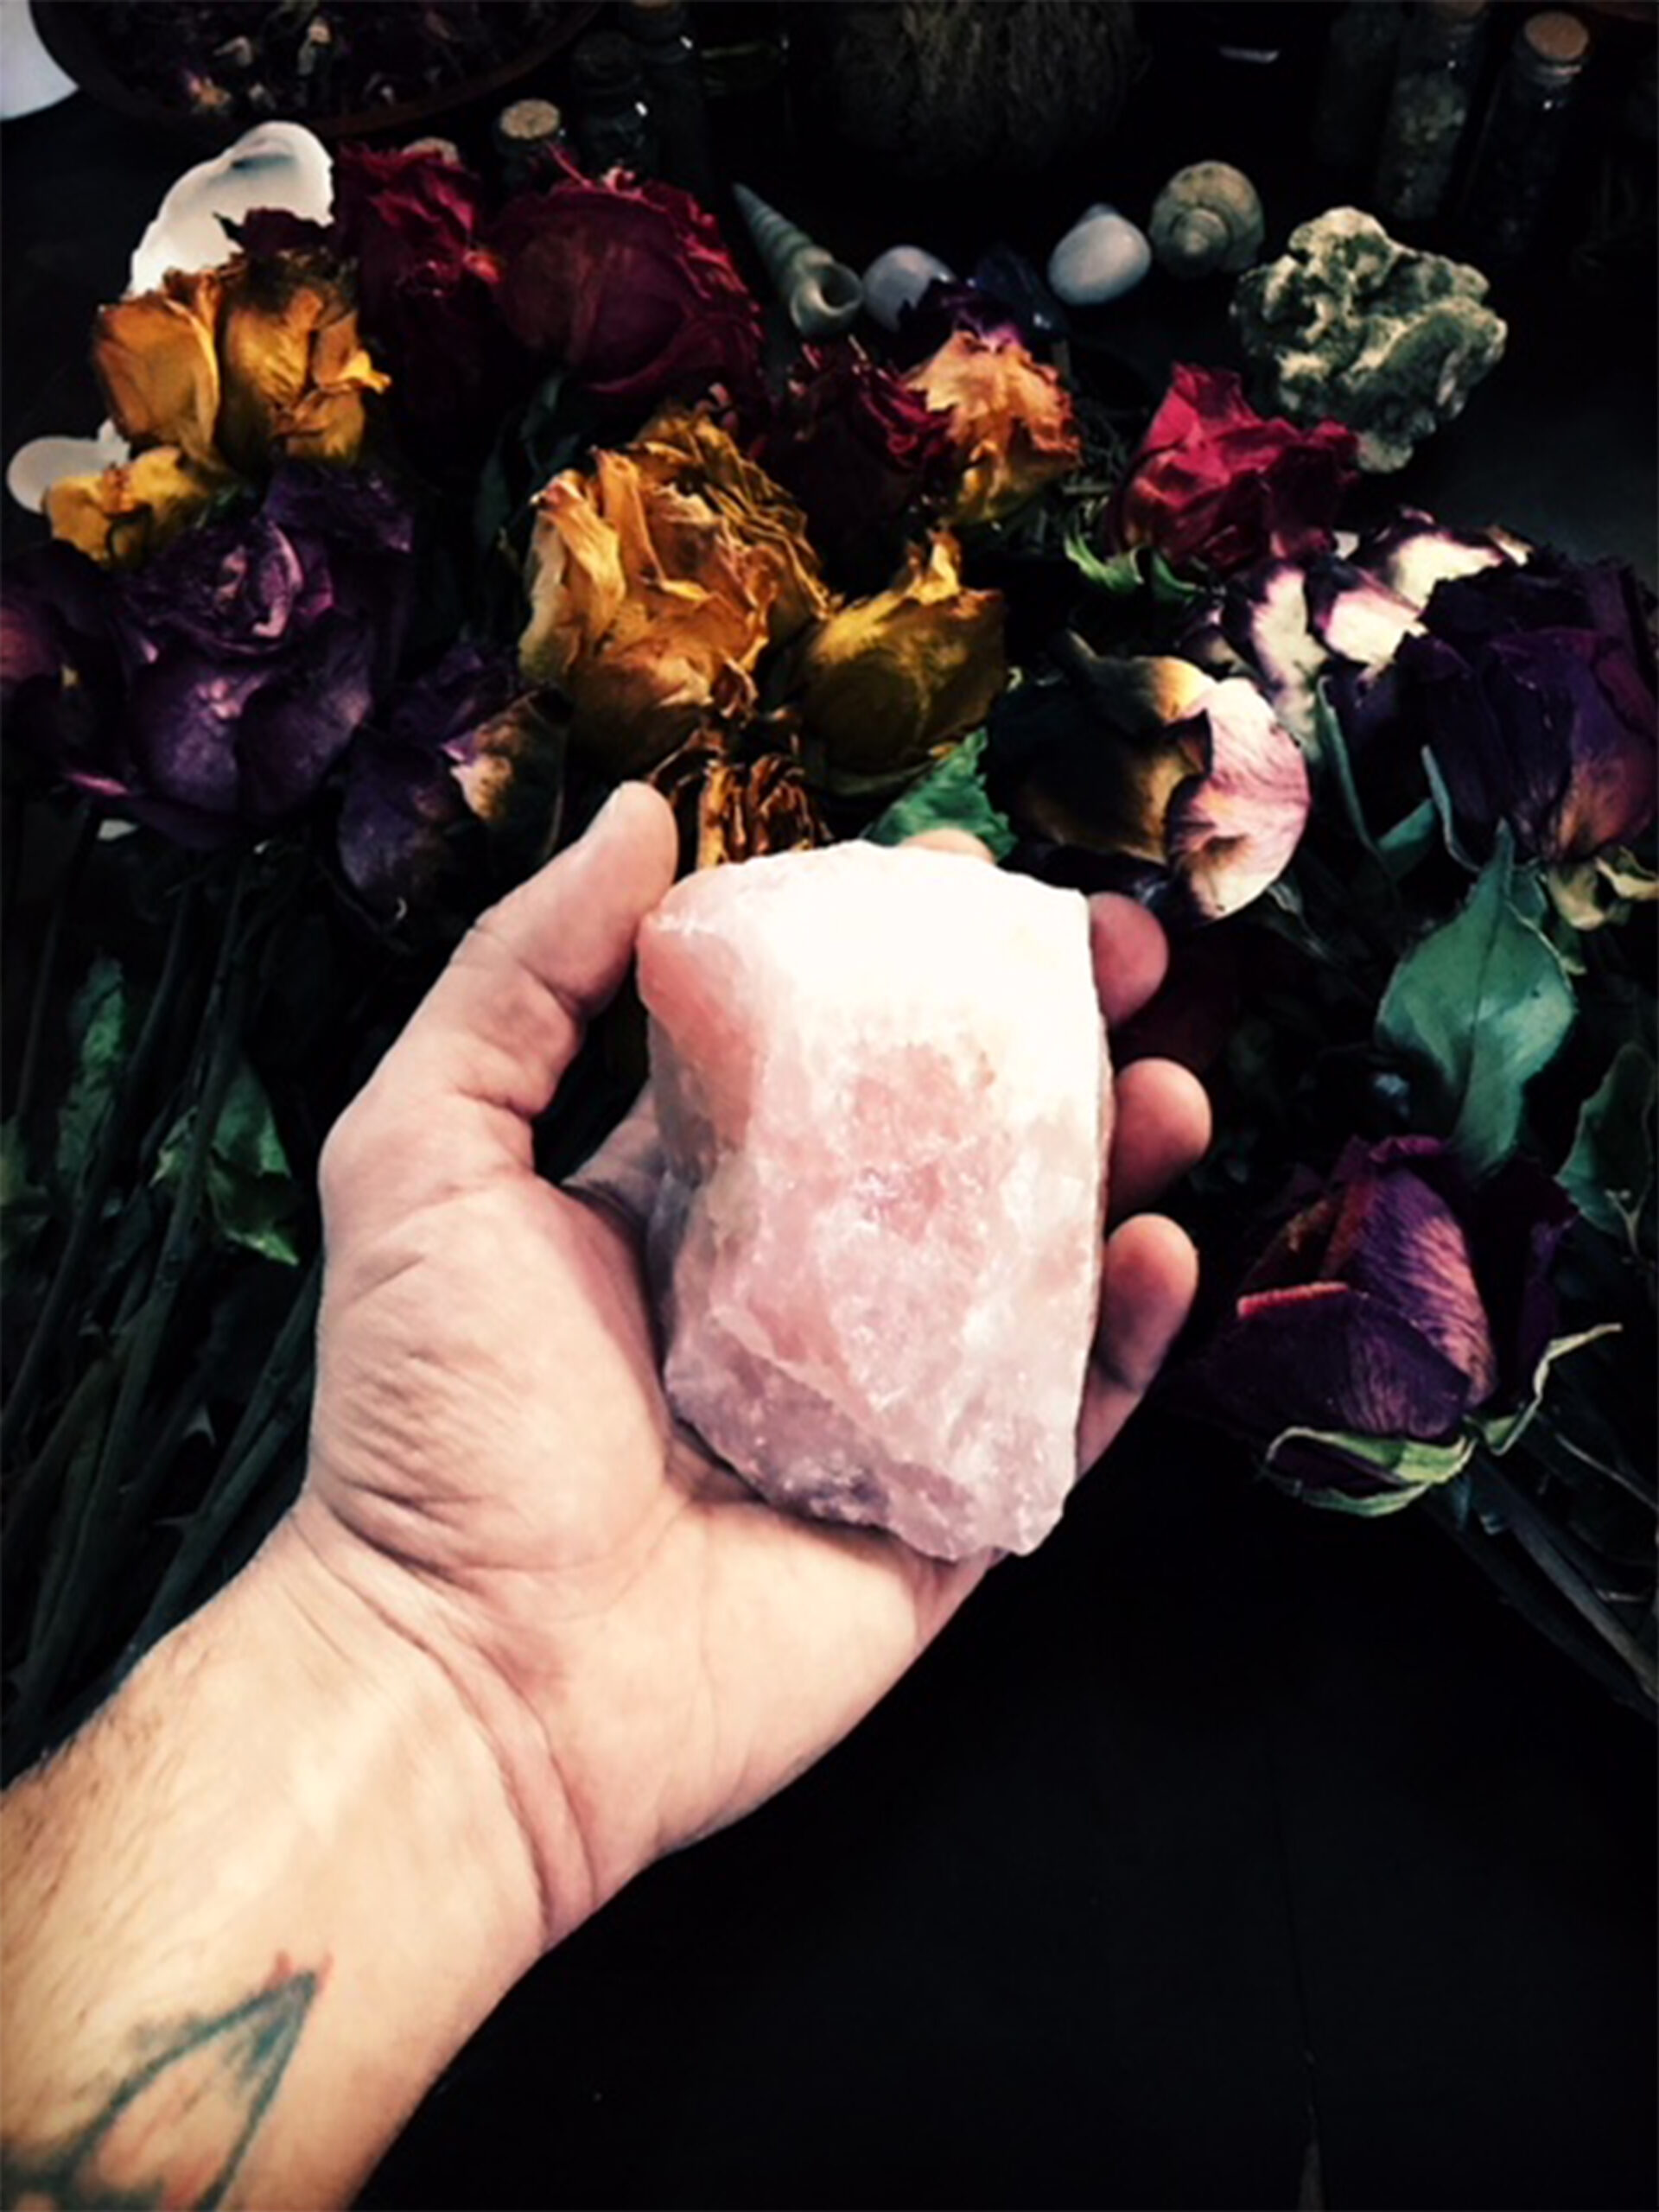 genuine raw rose quartz